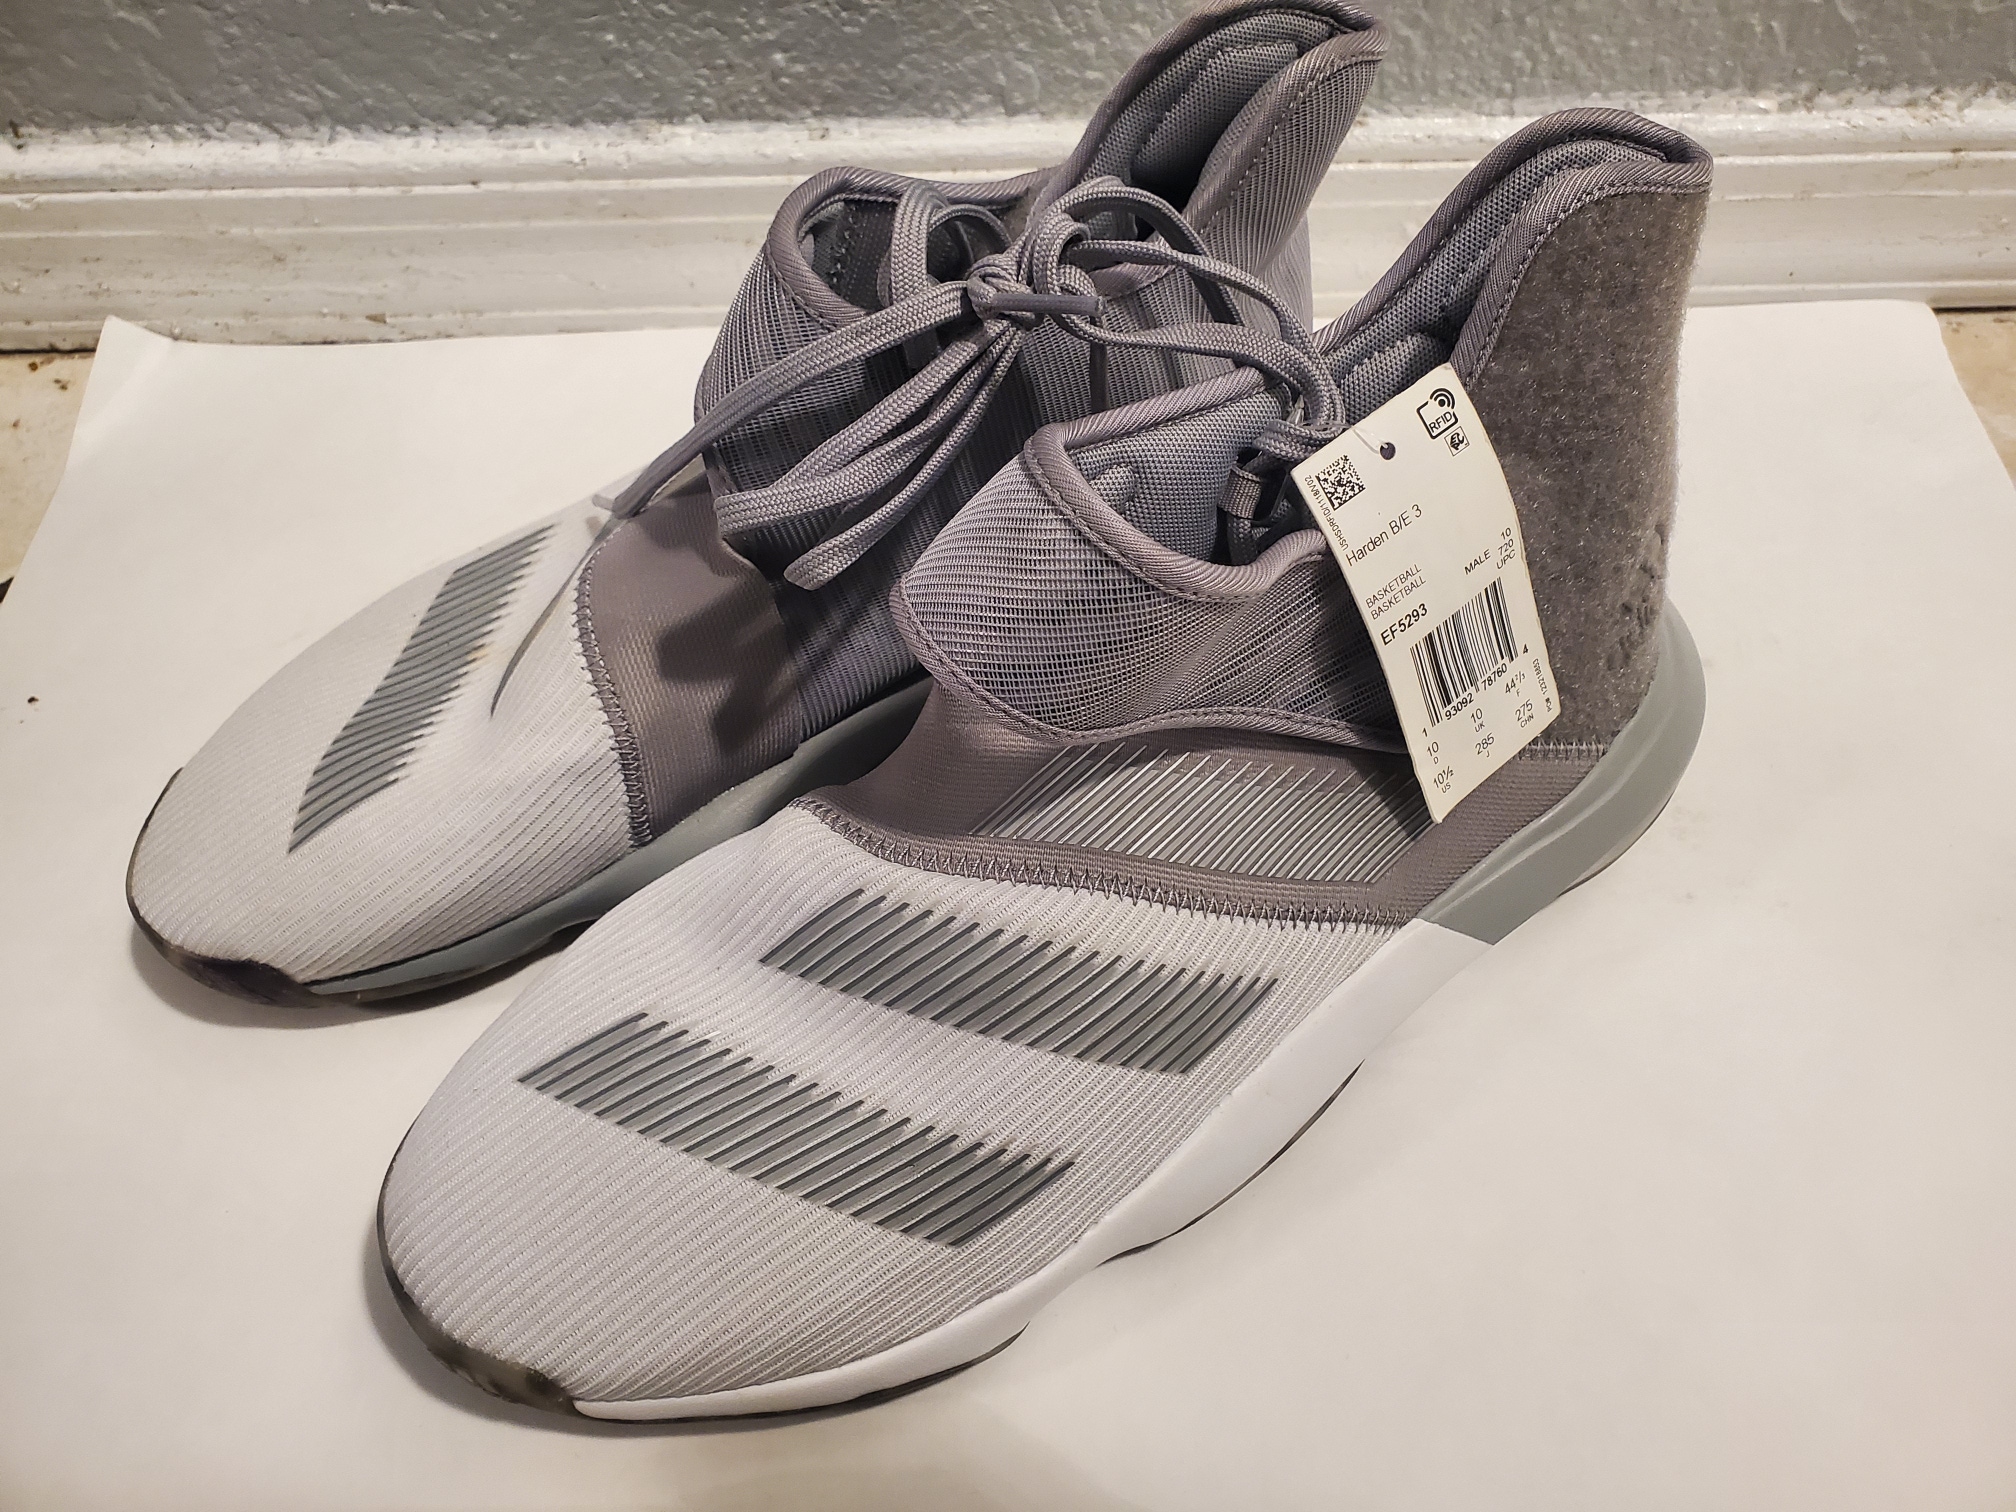 Adidas Harden B/E 3 Men's Basketball Shoes Grey - Size 10.5